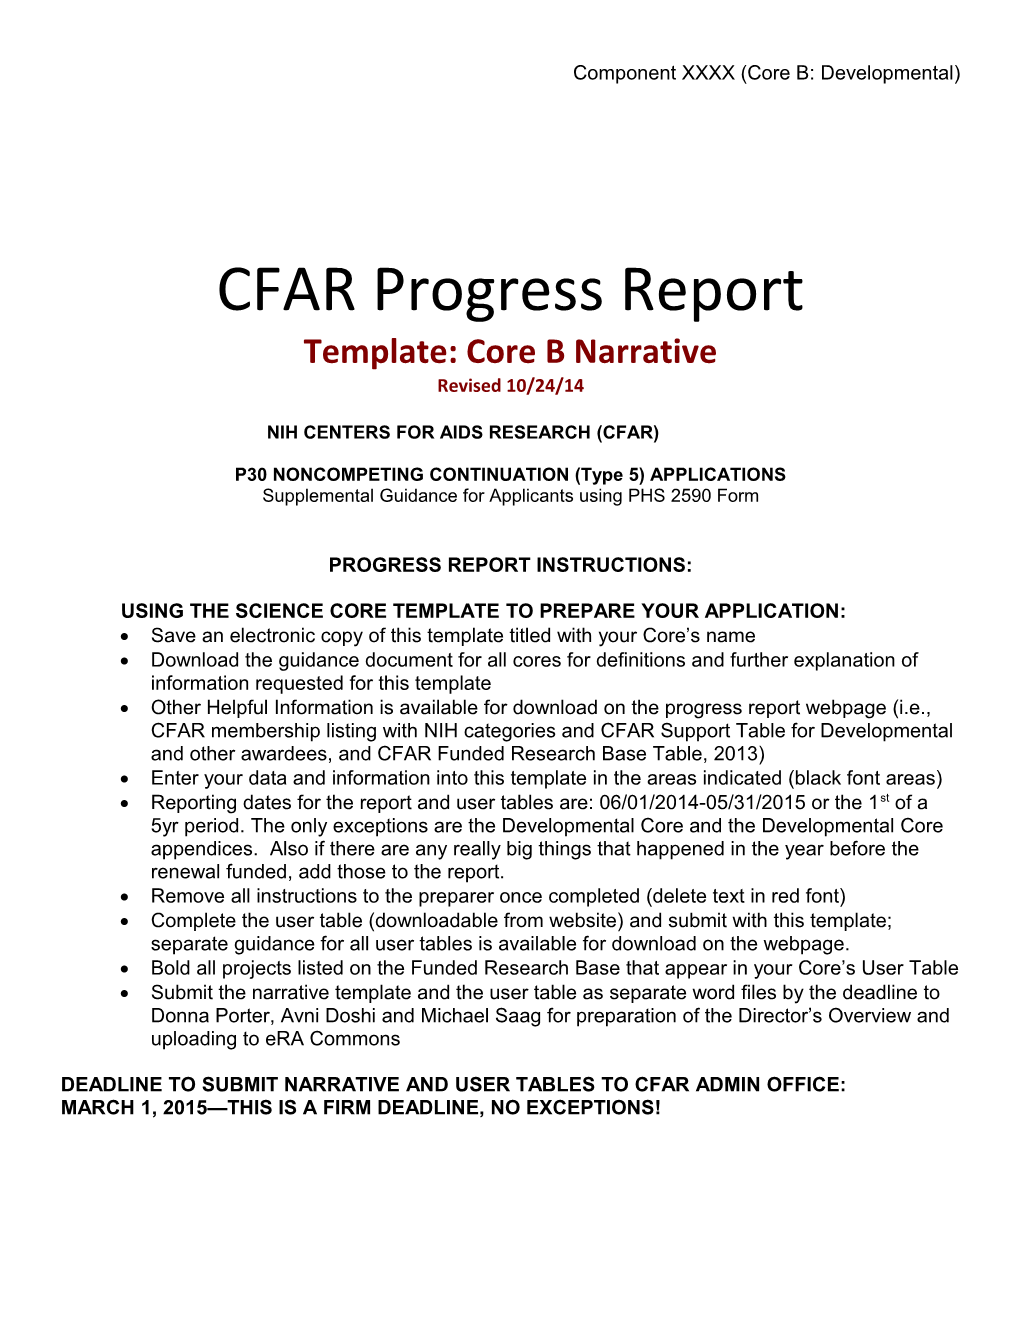 CFAR Progress Report s1